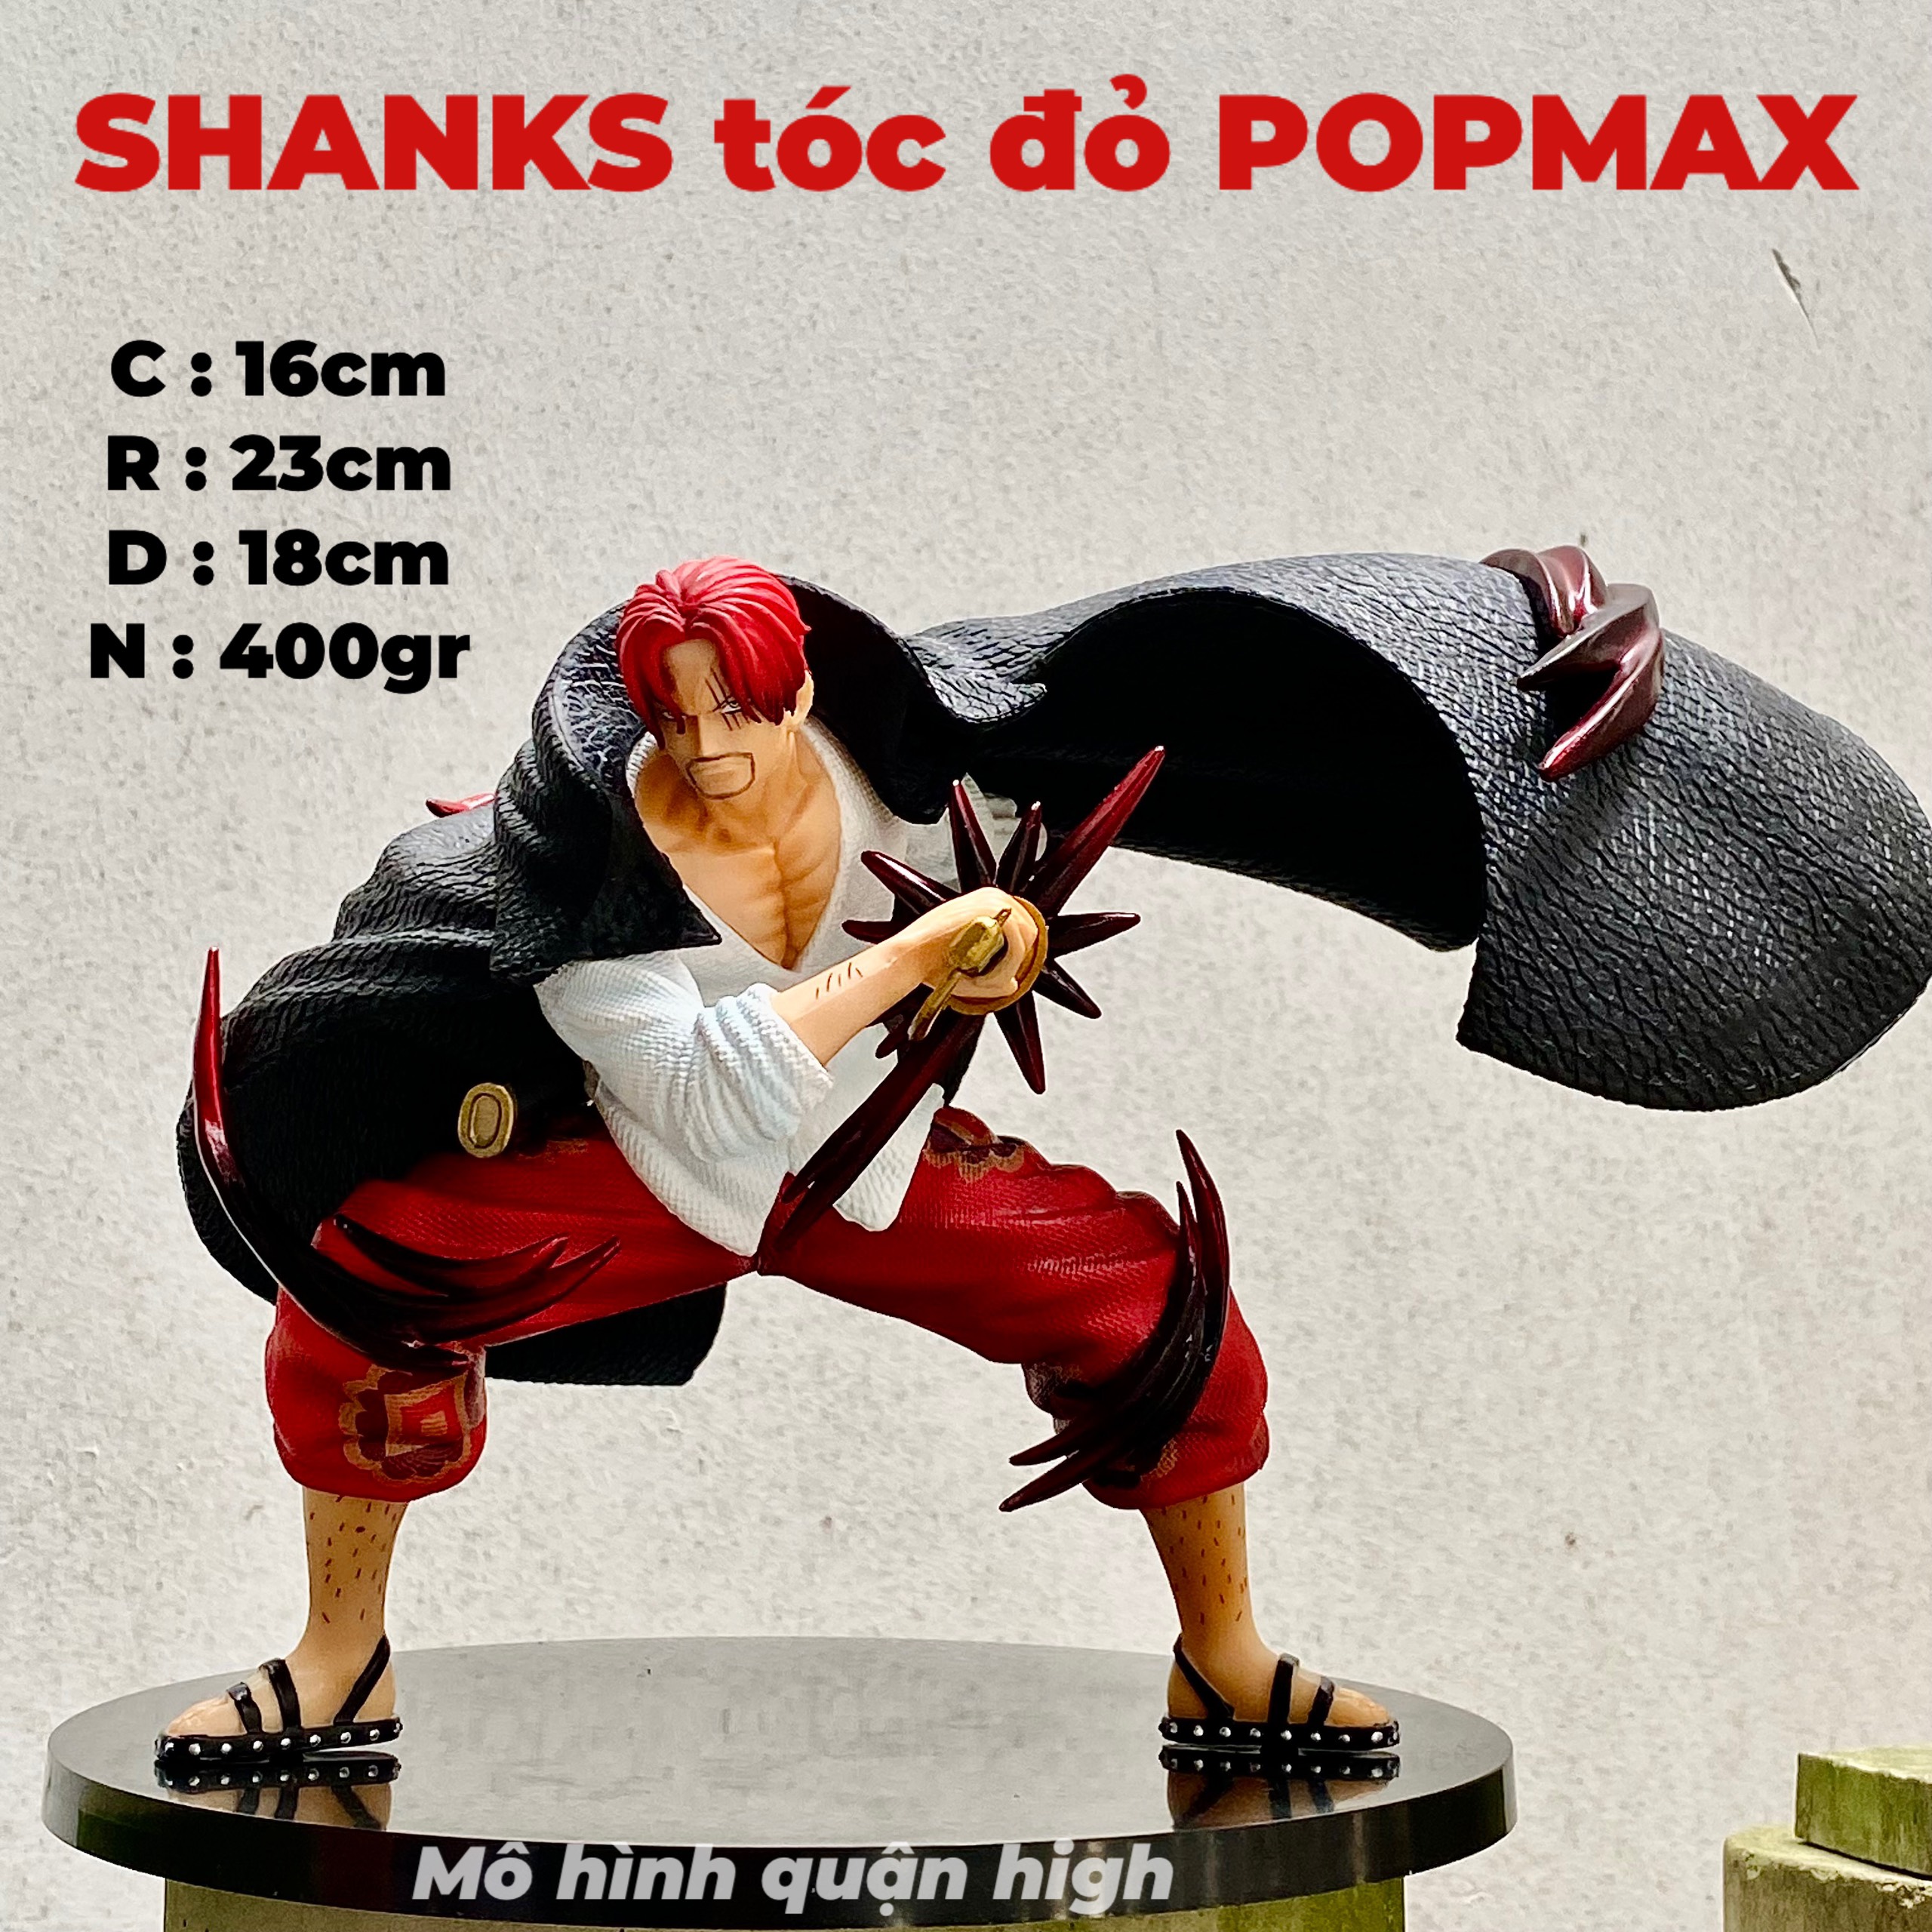 Có sẵn) Mô hình Shanks rút kím POP.MAX cao 16cm - Shanks tóc đỏ mẫu mới  nhất 2022 - one piece mô hình